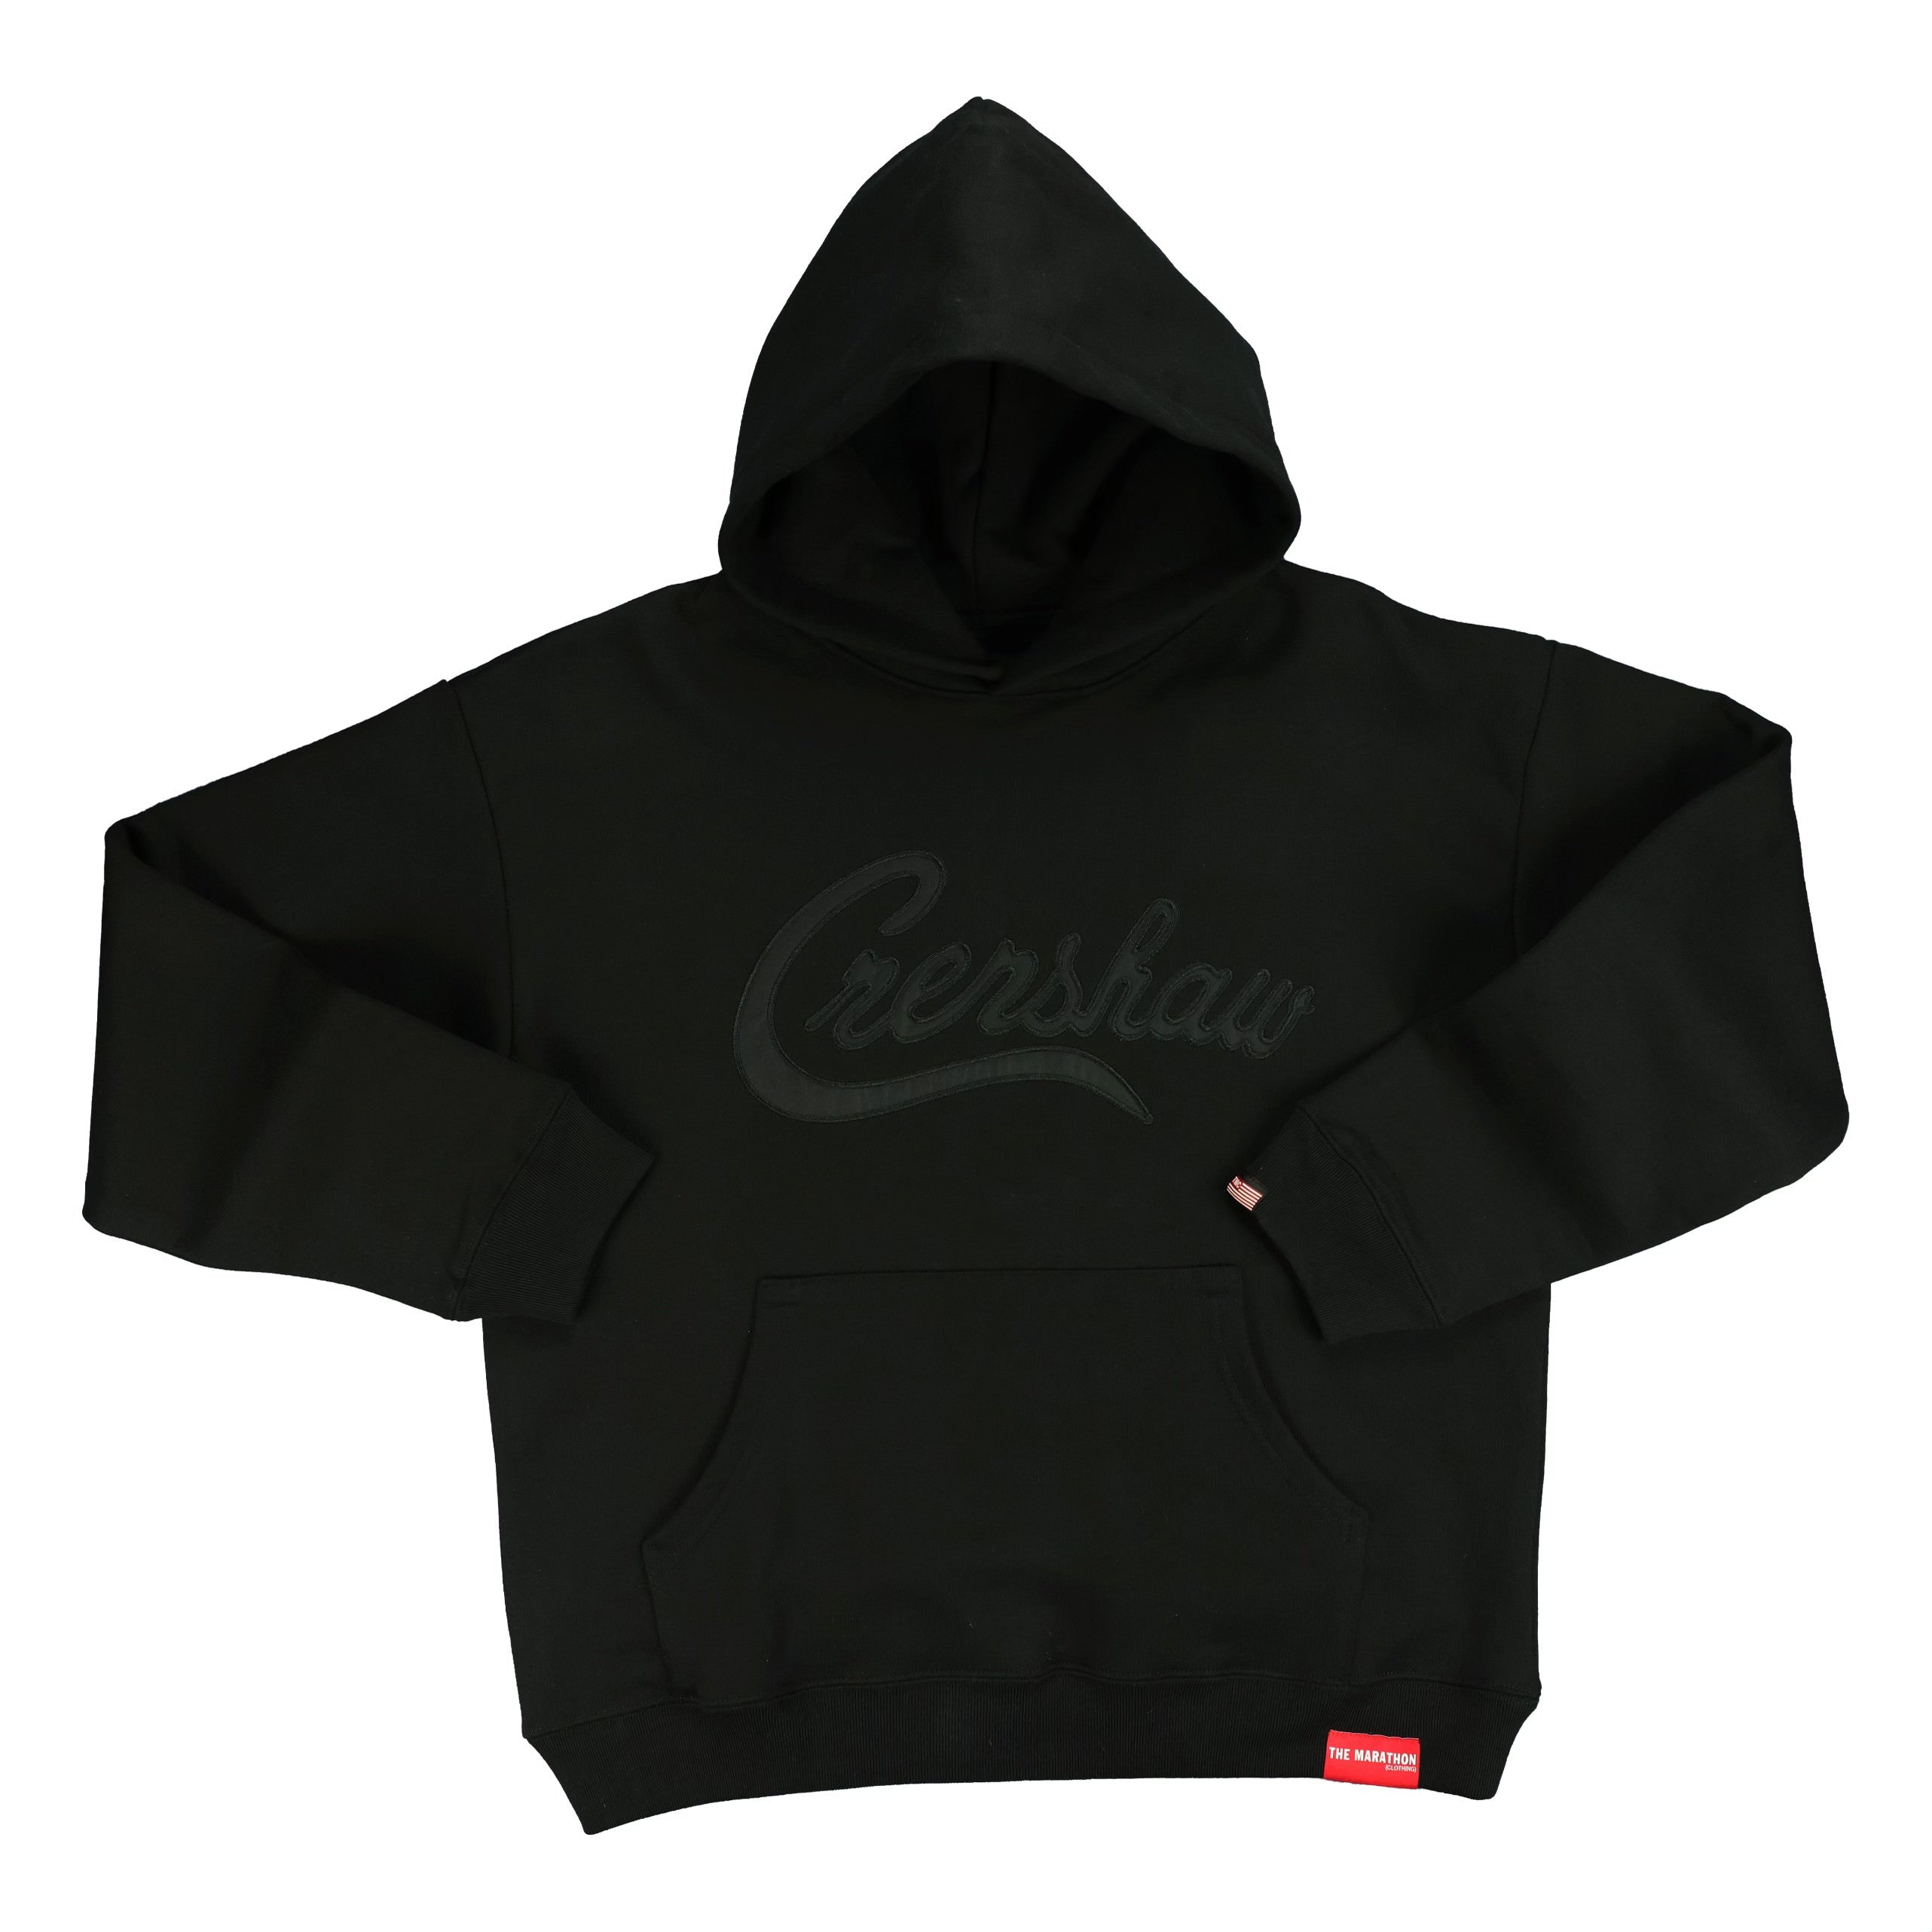 Crenshaw Hoodie - Black/Black – The Marathon Clothing